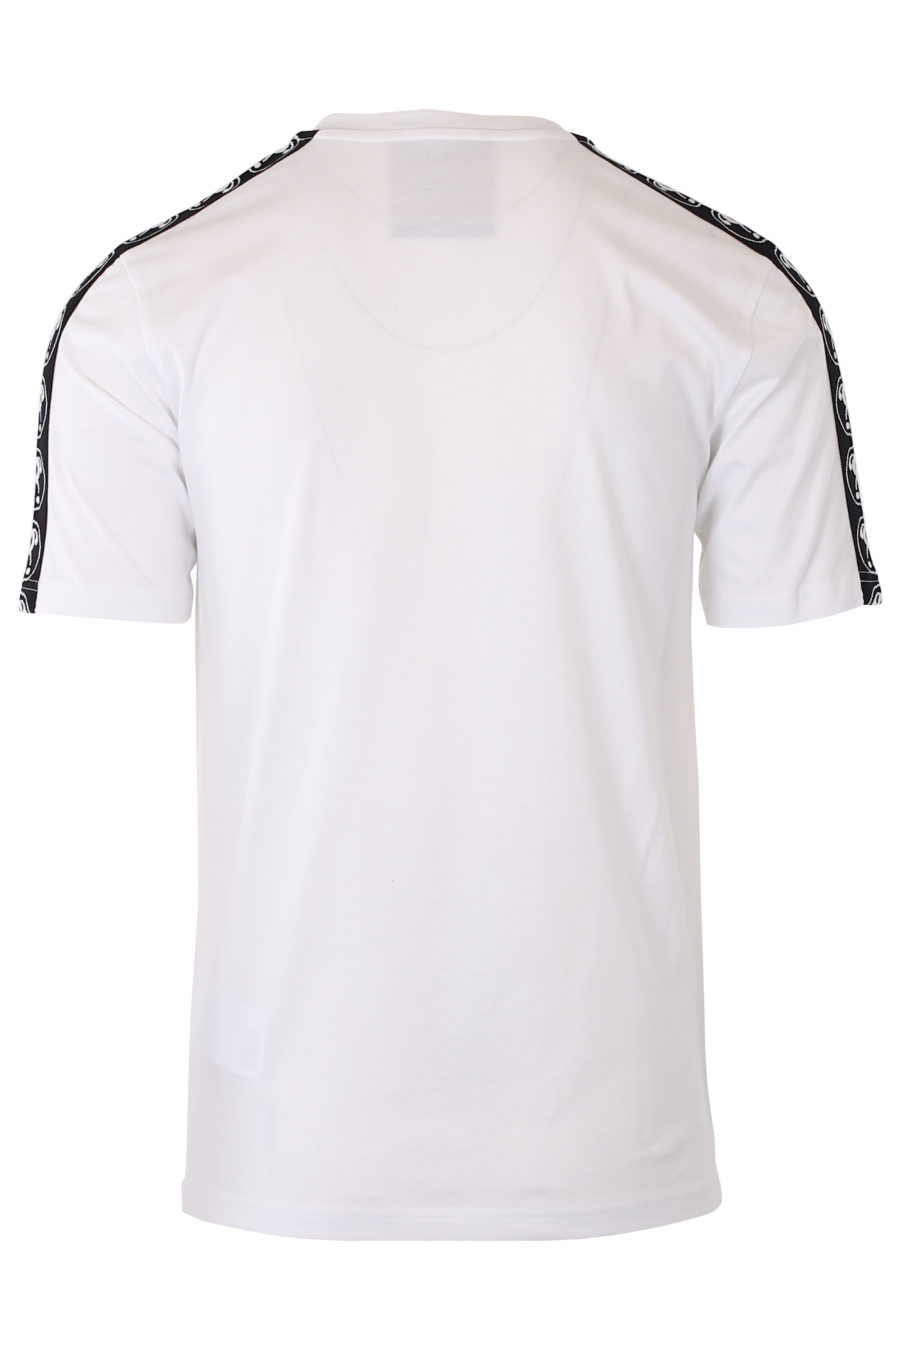 Weißes T-Shirt mit kleinem Doppelfrage-Logo und Band am Ärmel - IMG 9333